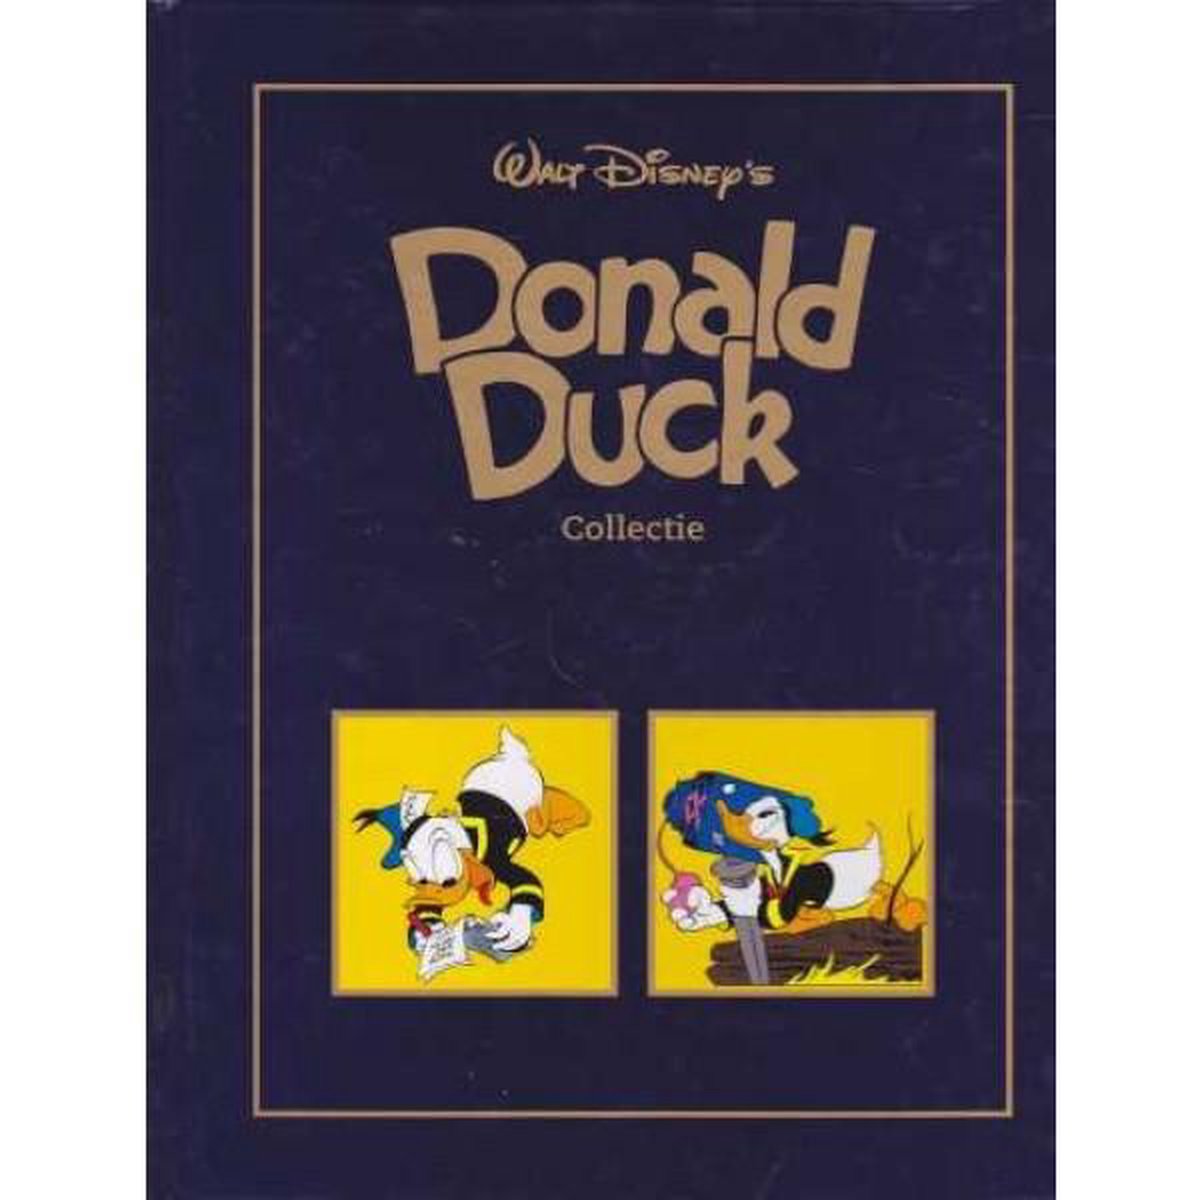 Donald Duck als Journalist / Donald Duck als fotograaf